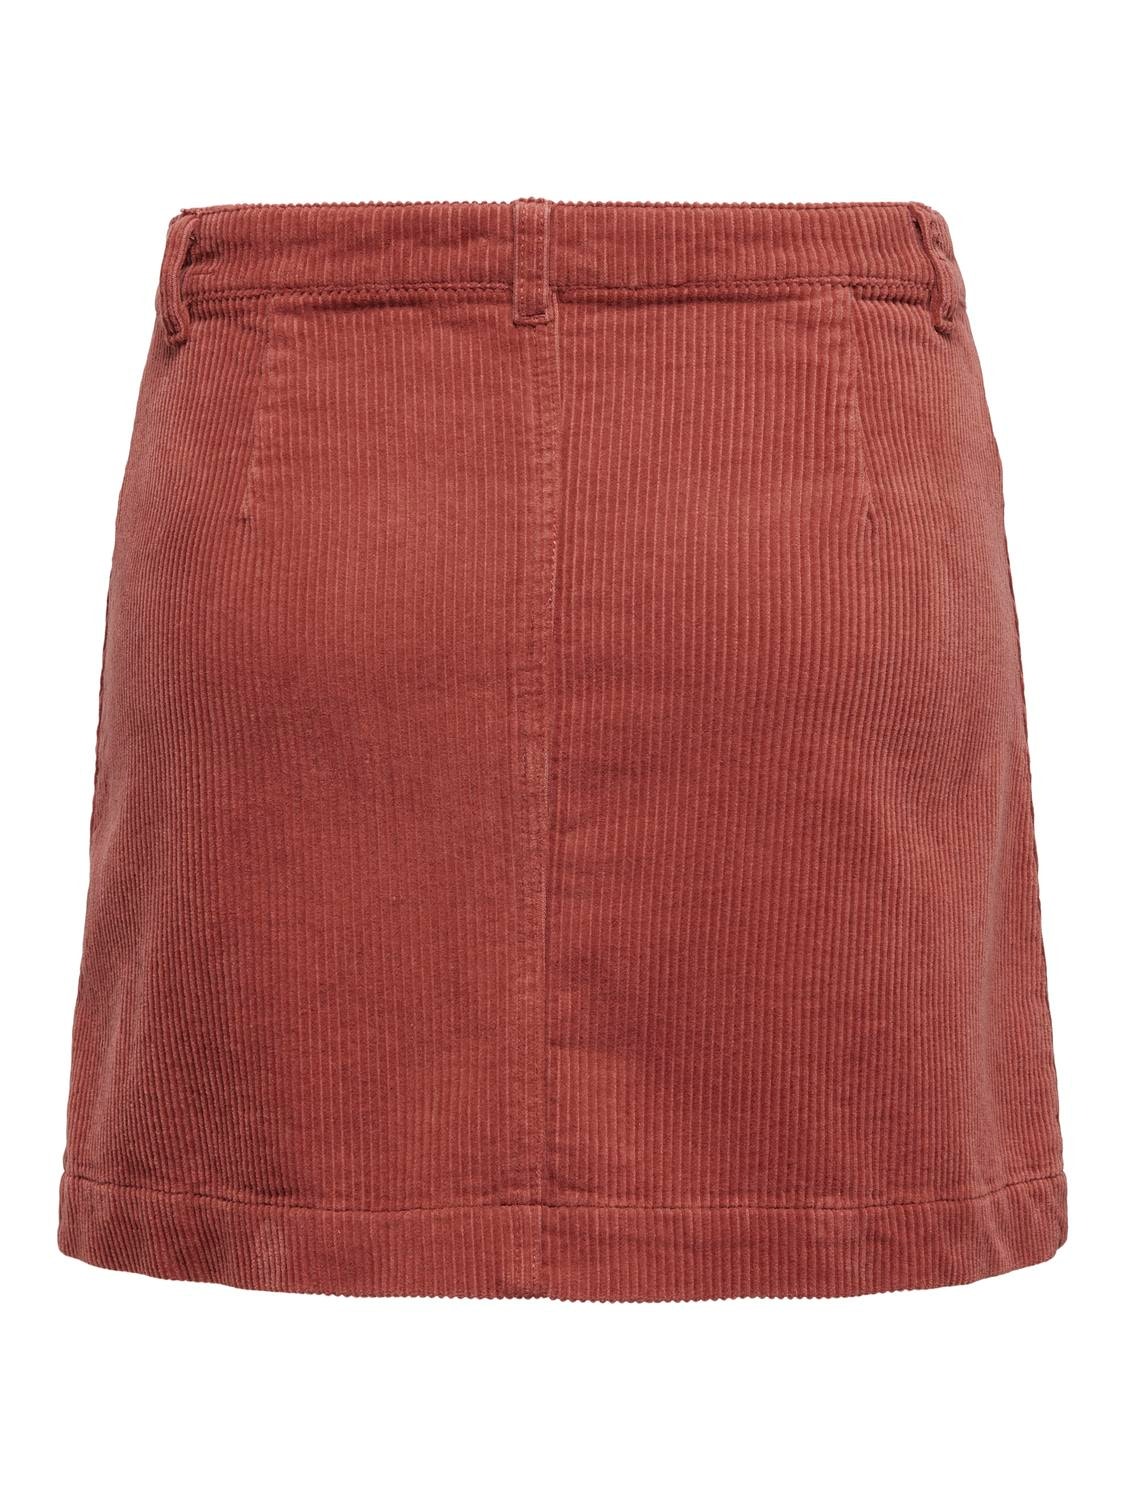 ONLY High waist Short skirt -Spiced Apple - 15182080